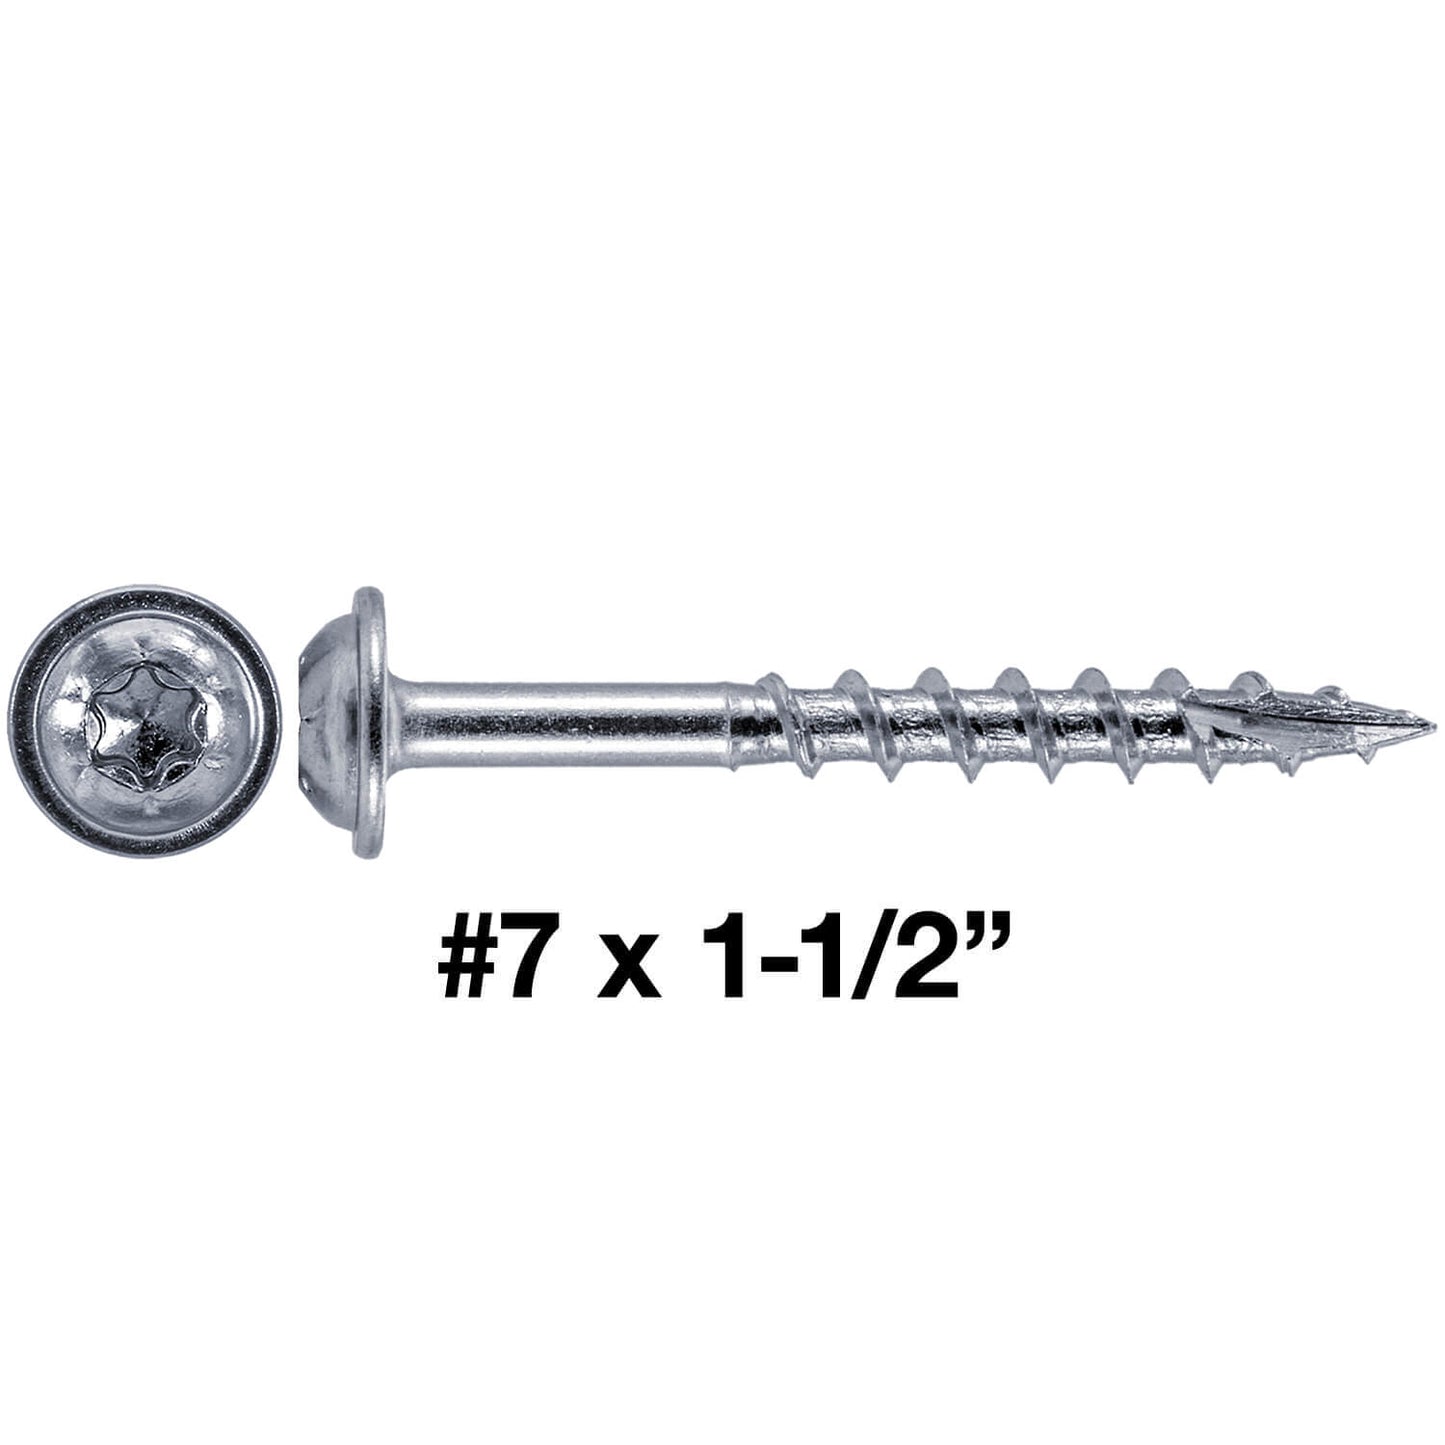 #7 Coarse Thread Pocket Hole Torx/Star Head Screws - Torx/Star Drive Pocket Hole Screws for Cabinetry & Furniture. - T-20 Torx Screw Head